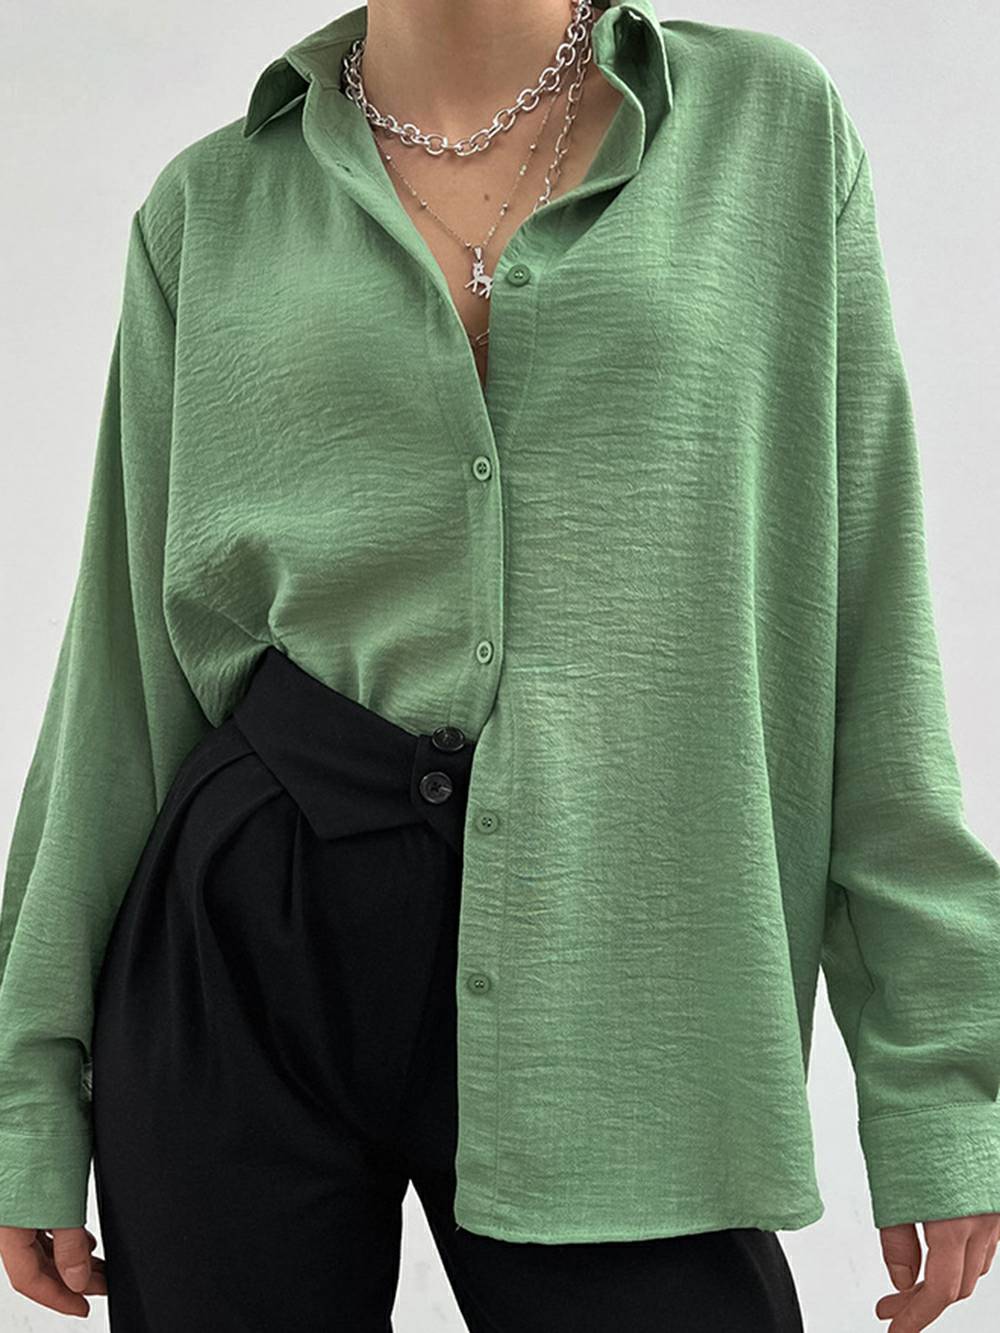 Jednořadá dámská košile pro volný čas s klopovým límečkem, s dlouhým rukávem